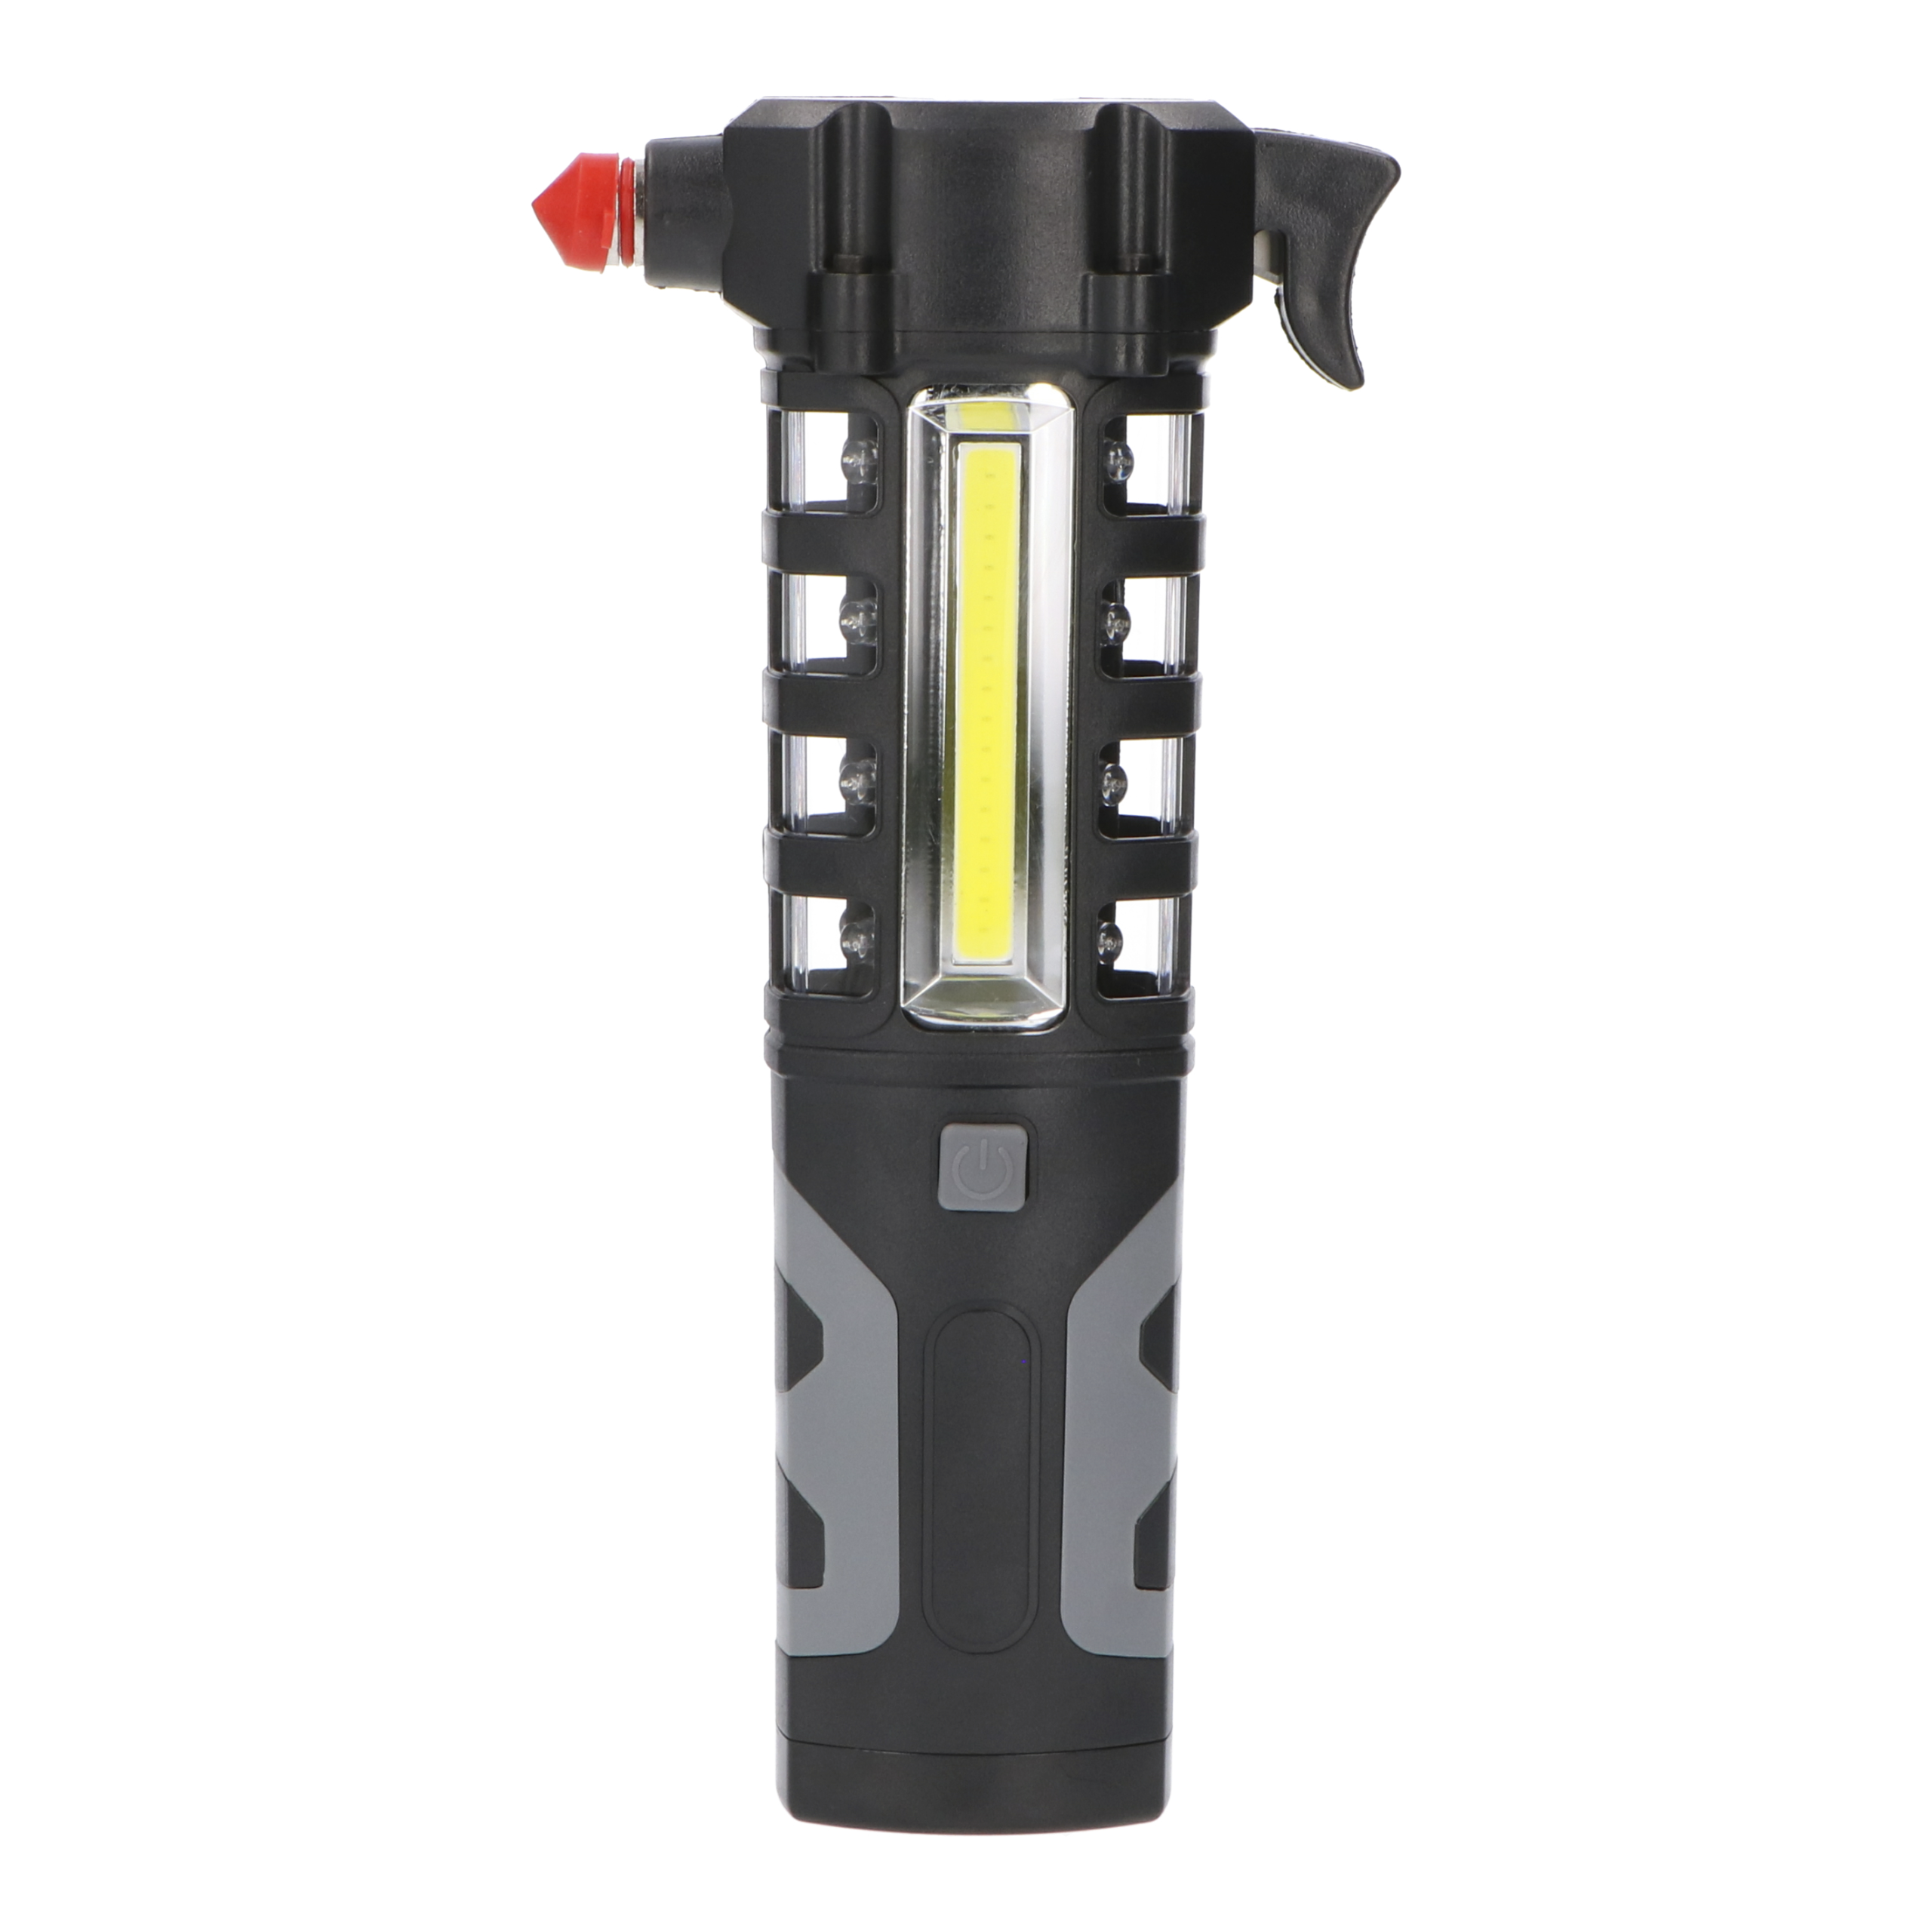  ZAIHW Linterna LED de emergencia para coche y cortador de  cinturón de seguridad – Cargador de manivela resistente linterna multiusos  de manivela, kit de herramientas de emergencia para escape de coche